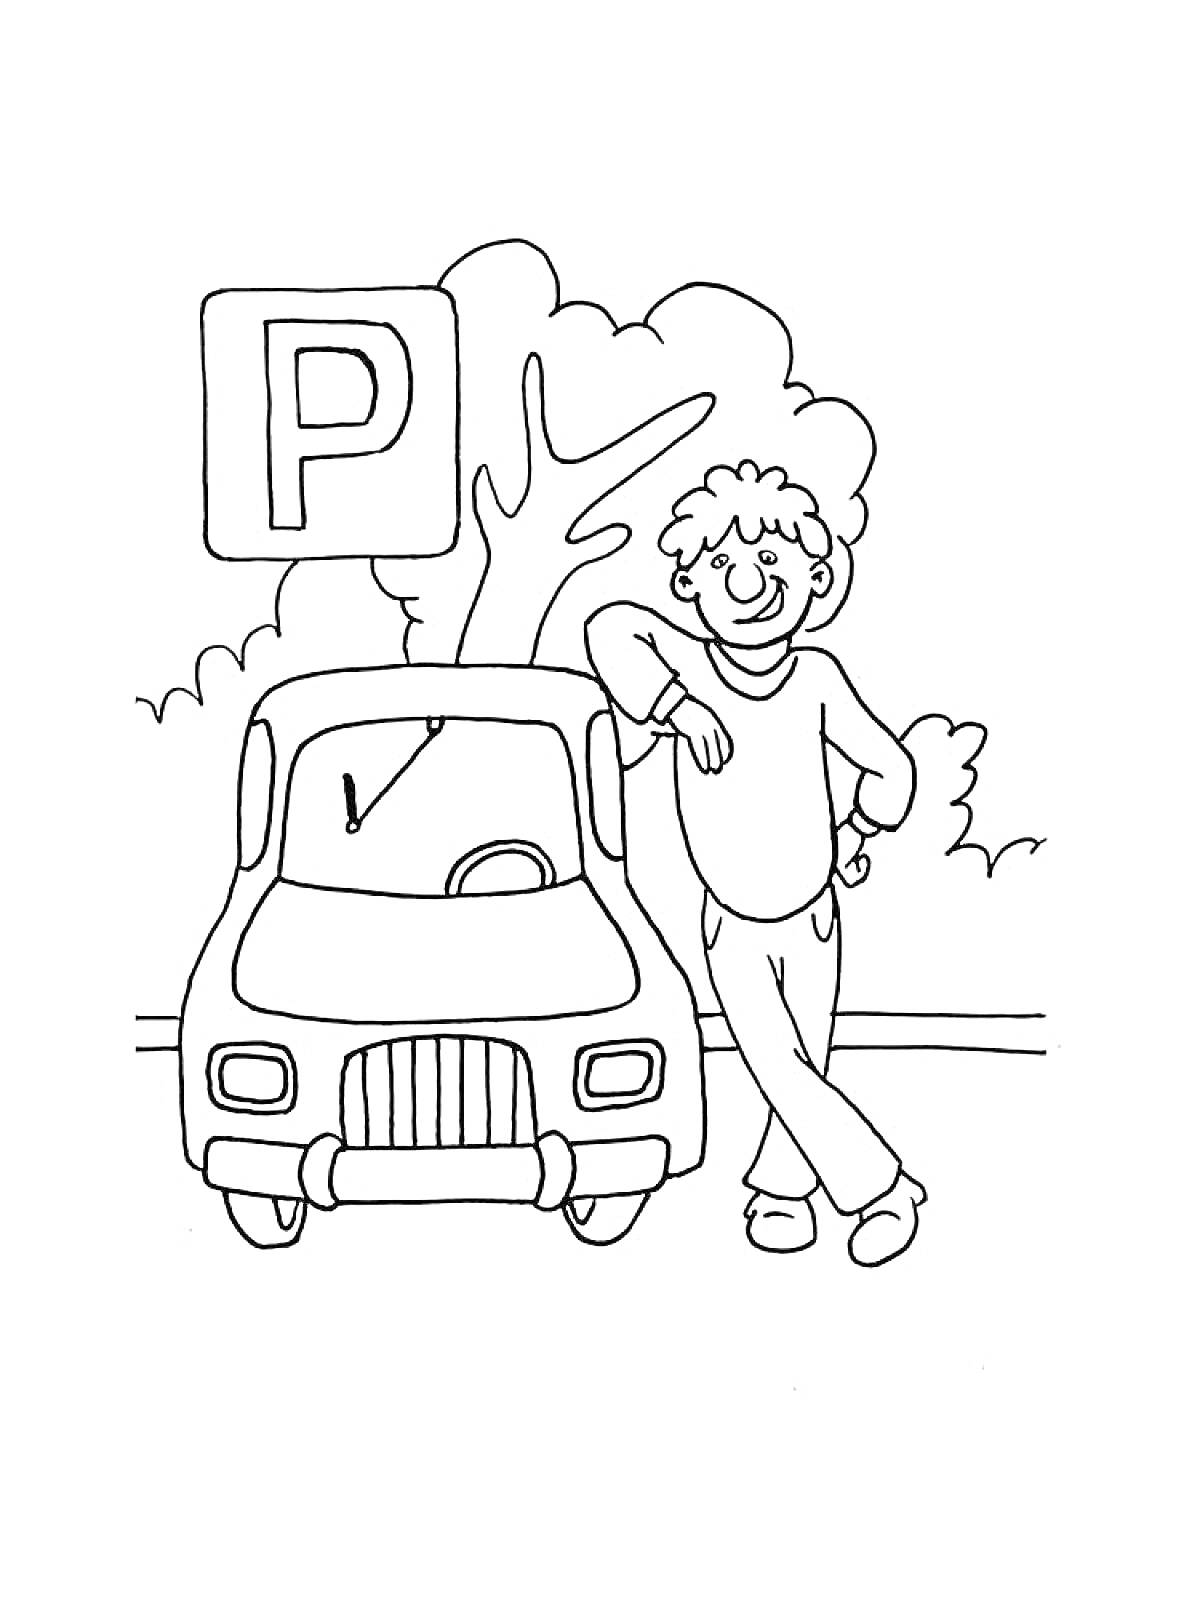 Мальчик, стоящий возле машины, на фоне парковочного знака и деревьев